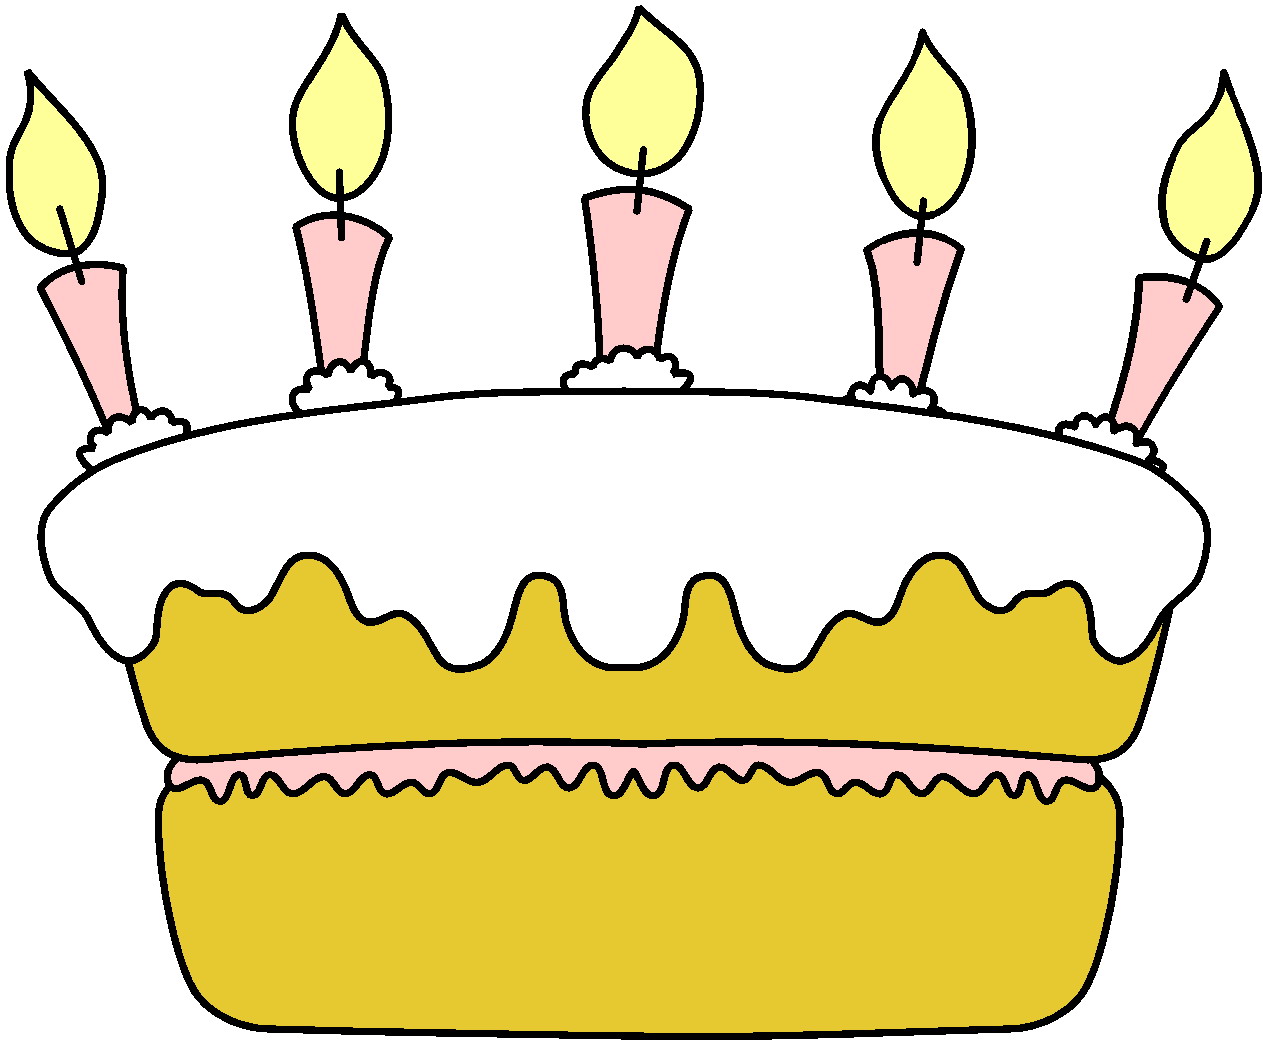 Рисовать рисунки на день рождения. Рисунок на день рождения. Рисунки на деньрожднгия\\. Торт рисунок. Рескюунки на день рождения.